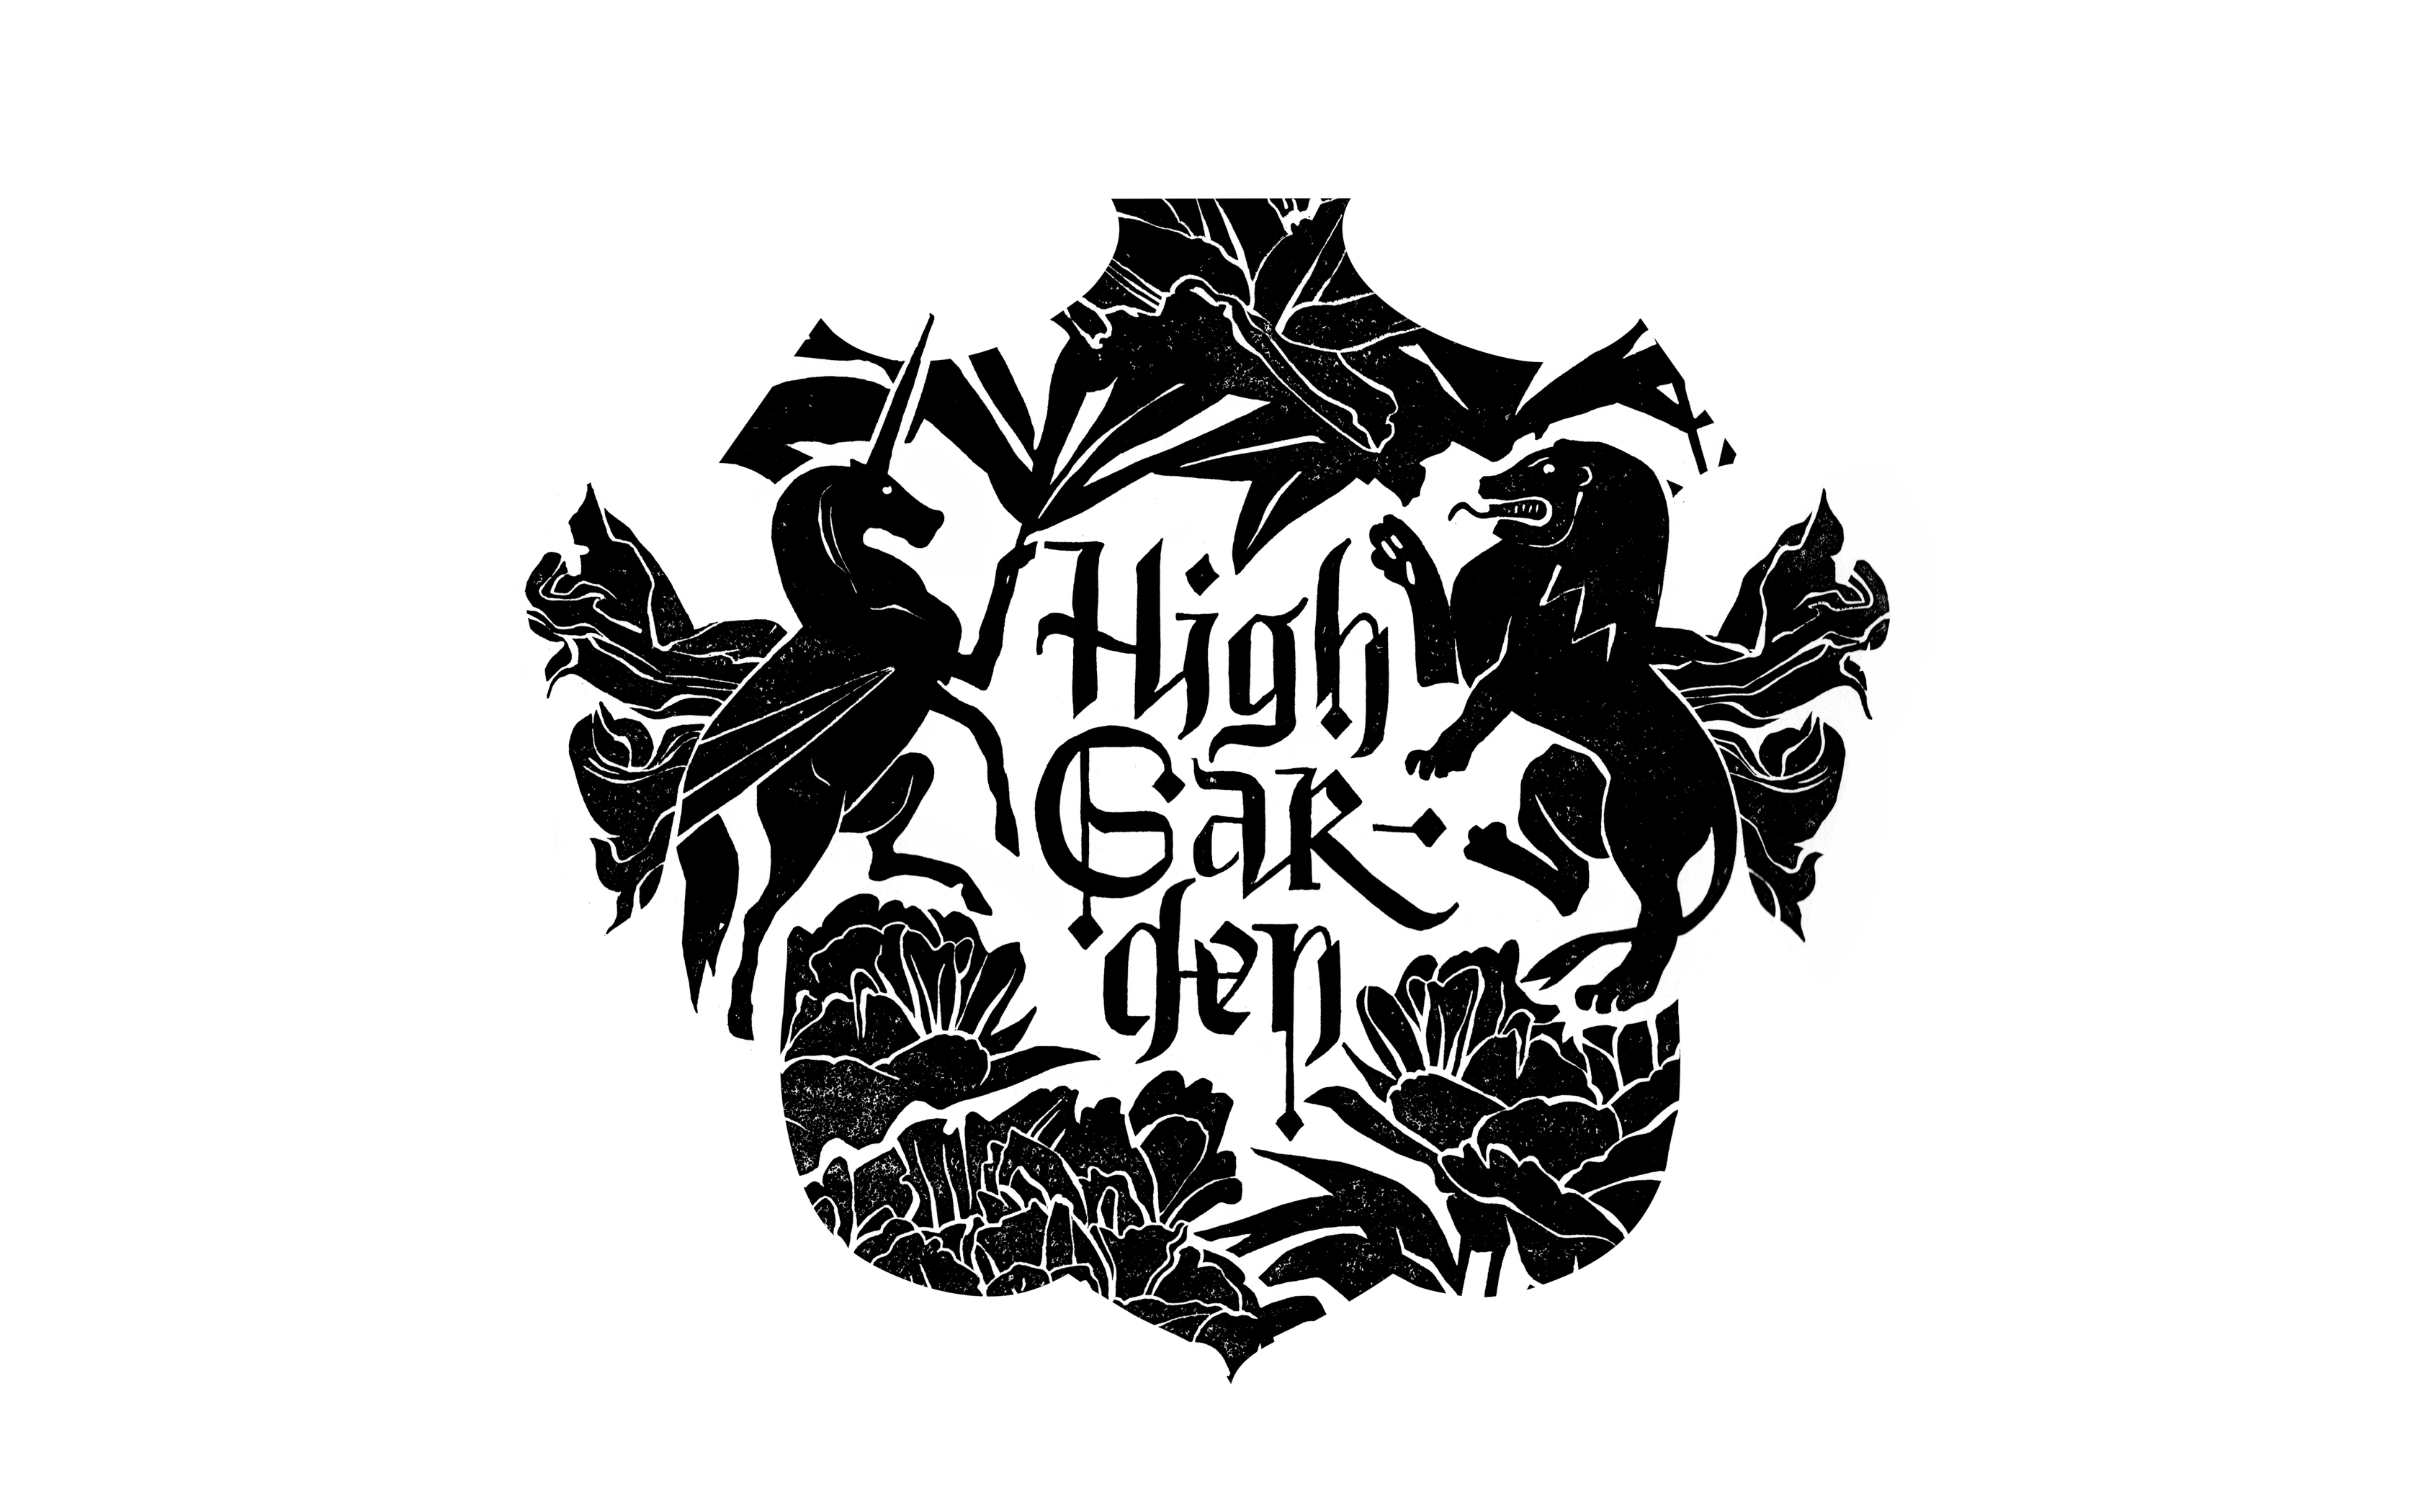 hg_logo.jpg